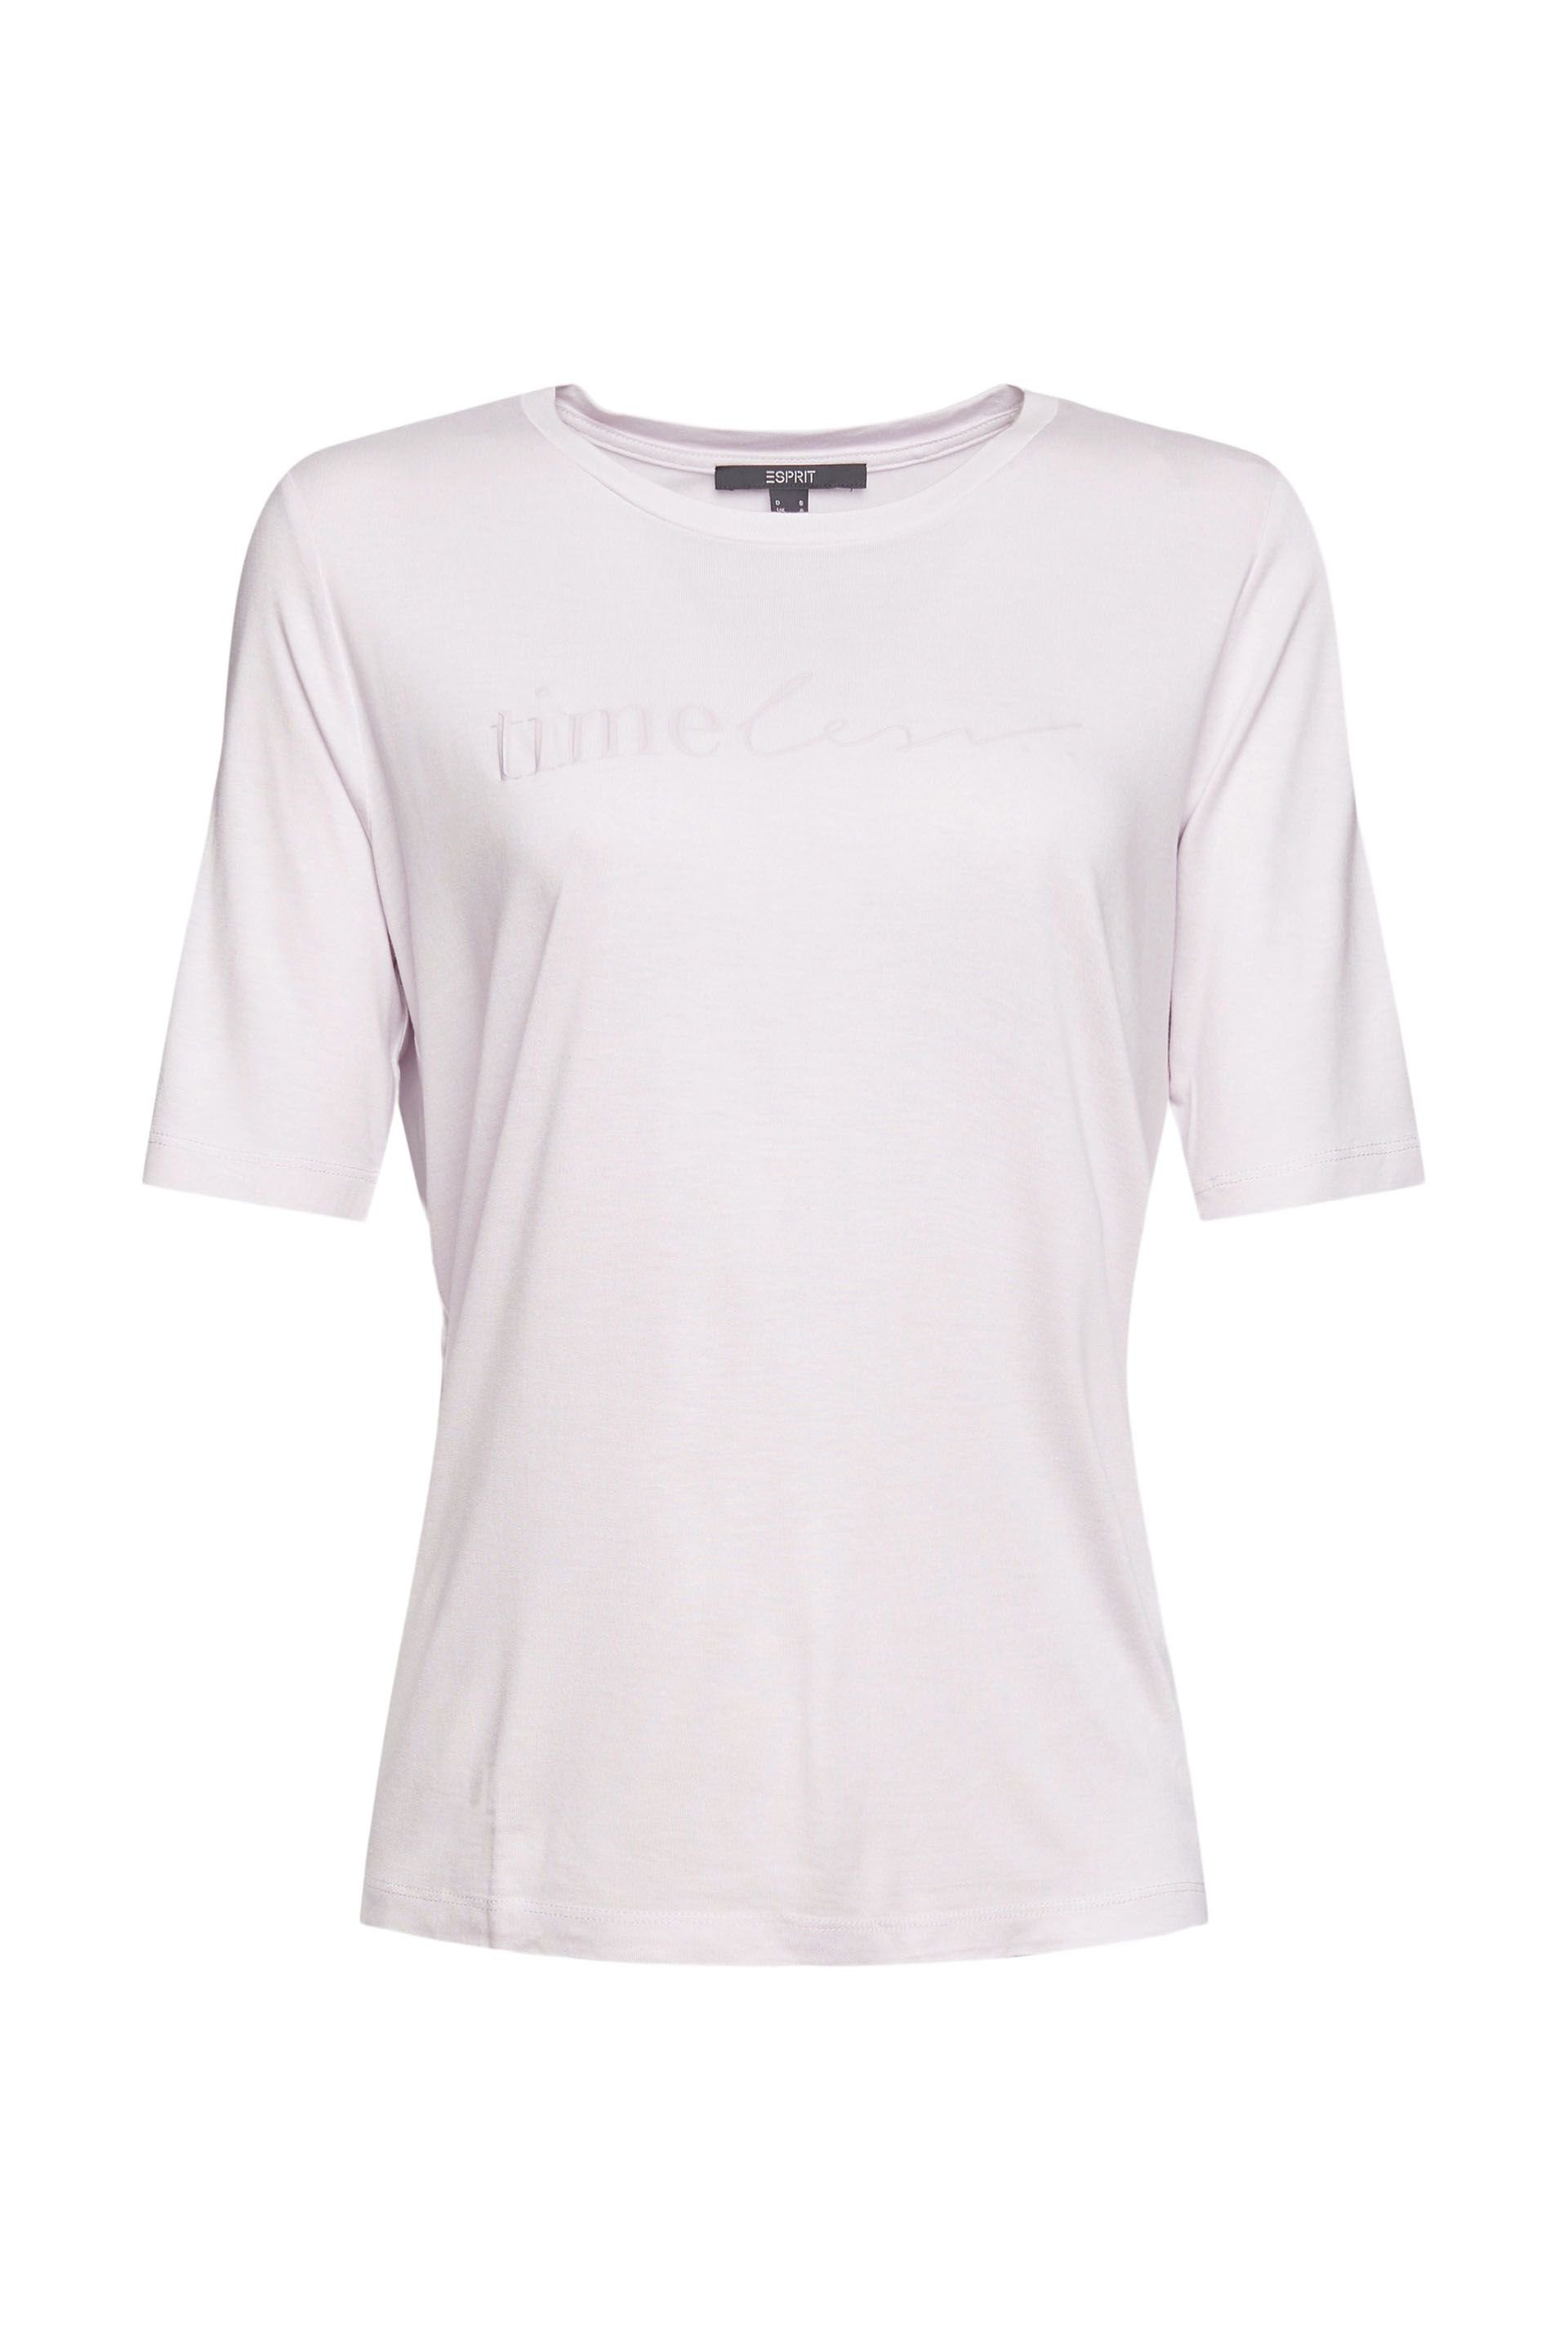 Esprit T-Shirt light pink | T-Shirts